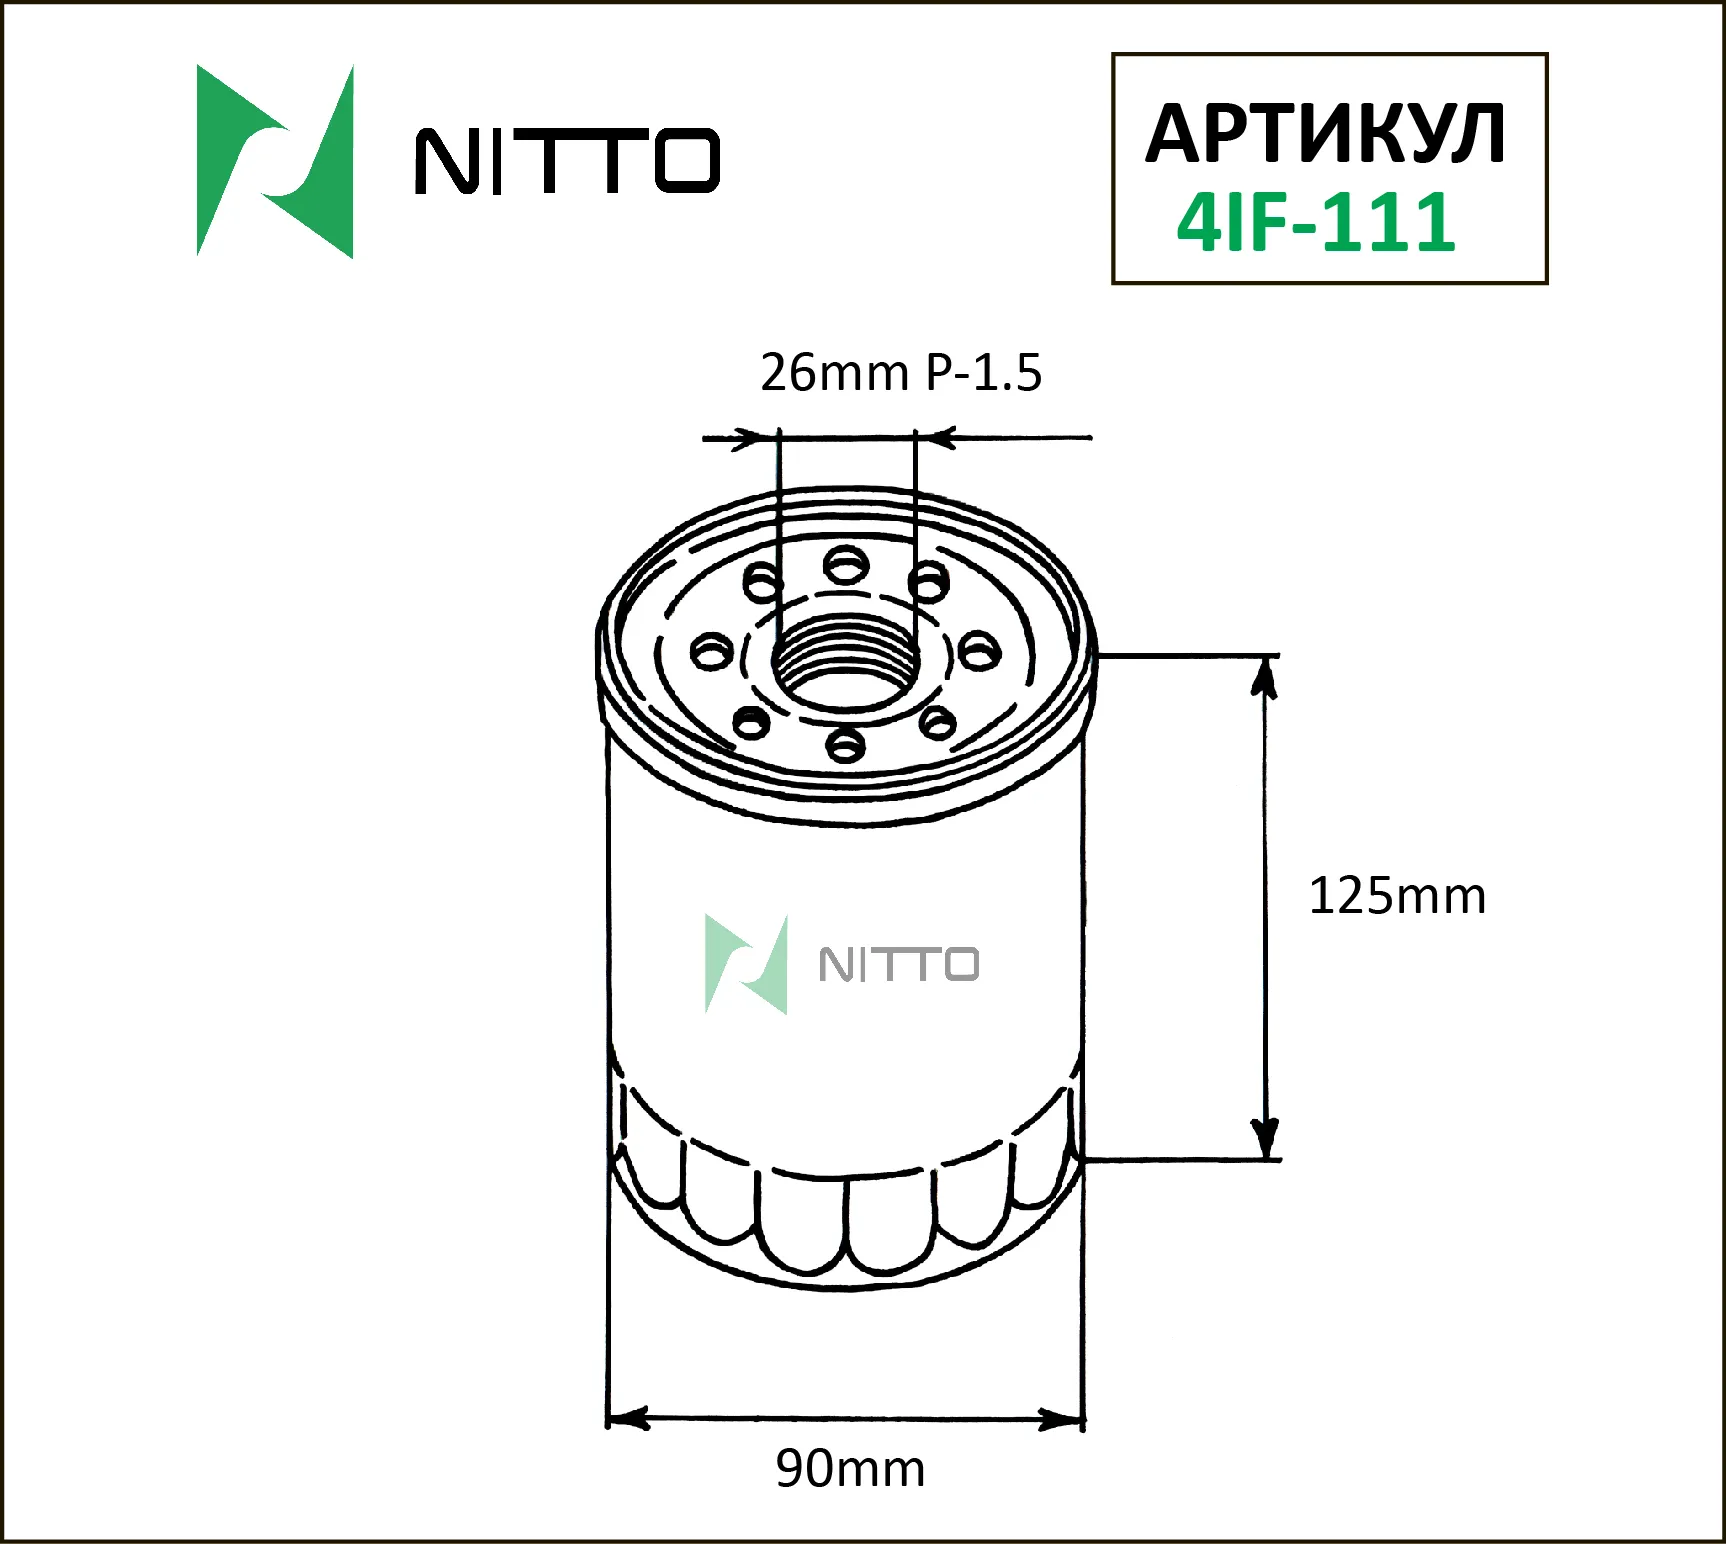 Масляный фильтр NITTO для Toyota (4IF-111)